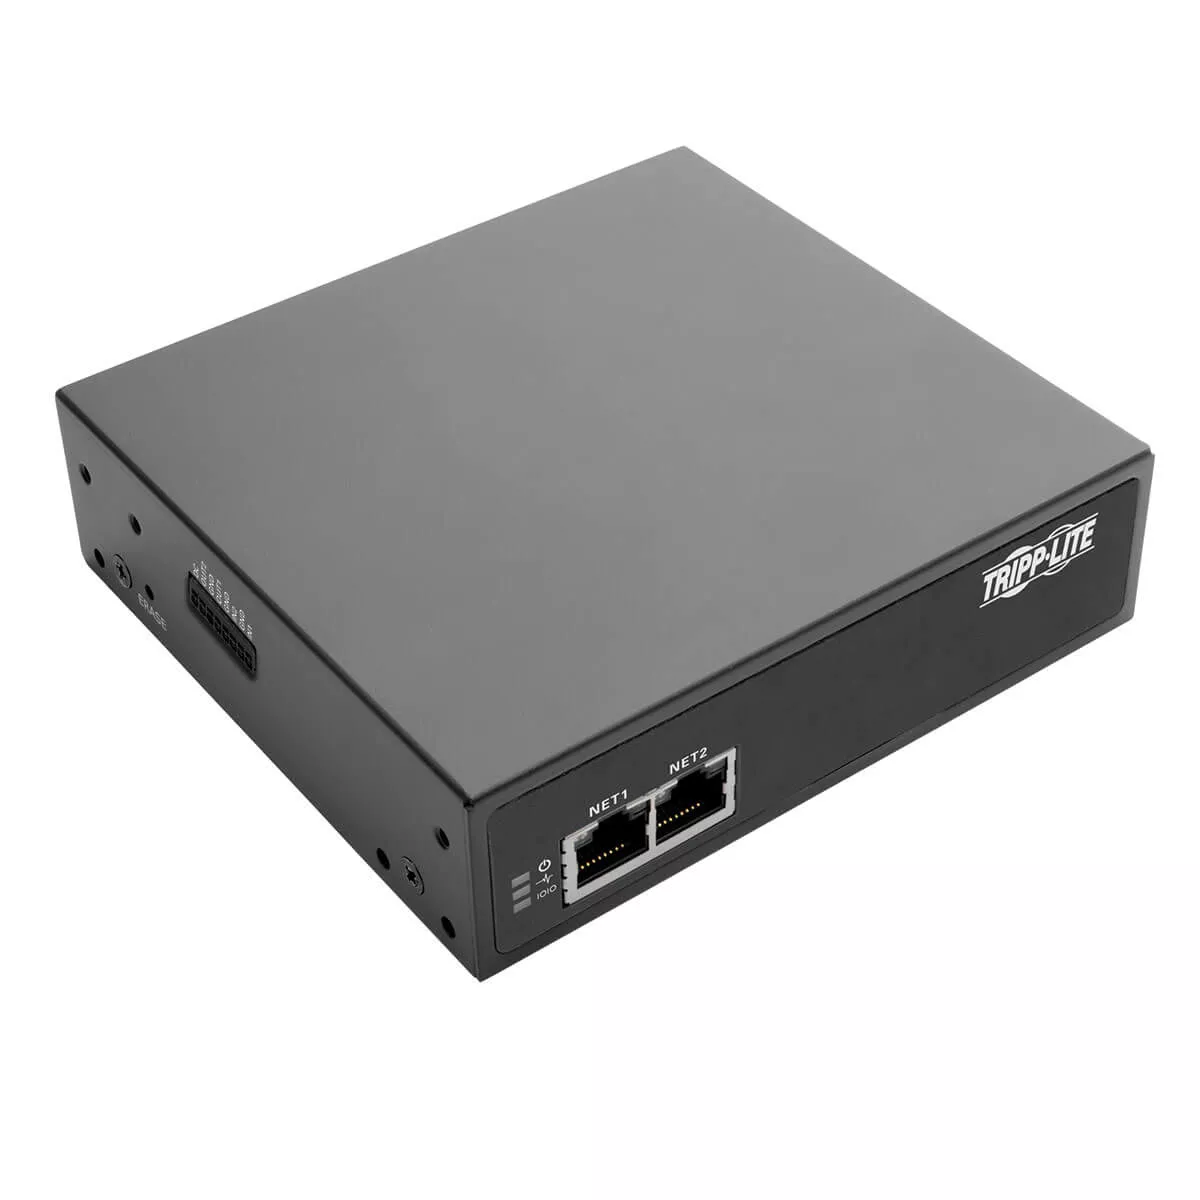 Achat Accessoire Réseau EATON TRIPPLITE 8-Port Console Server with Dual GbE NIC sur hello RSE